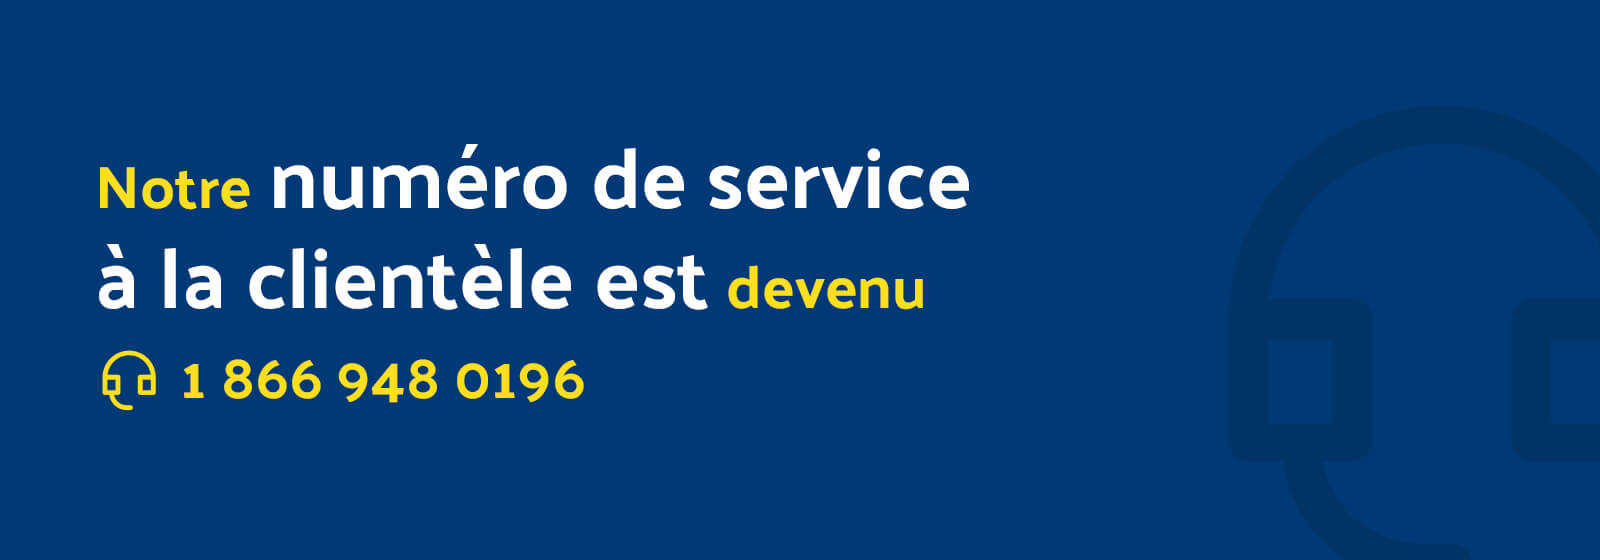 Lecture de texte "Notre numéro de service client a changé pour 18669480196".